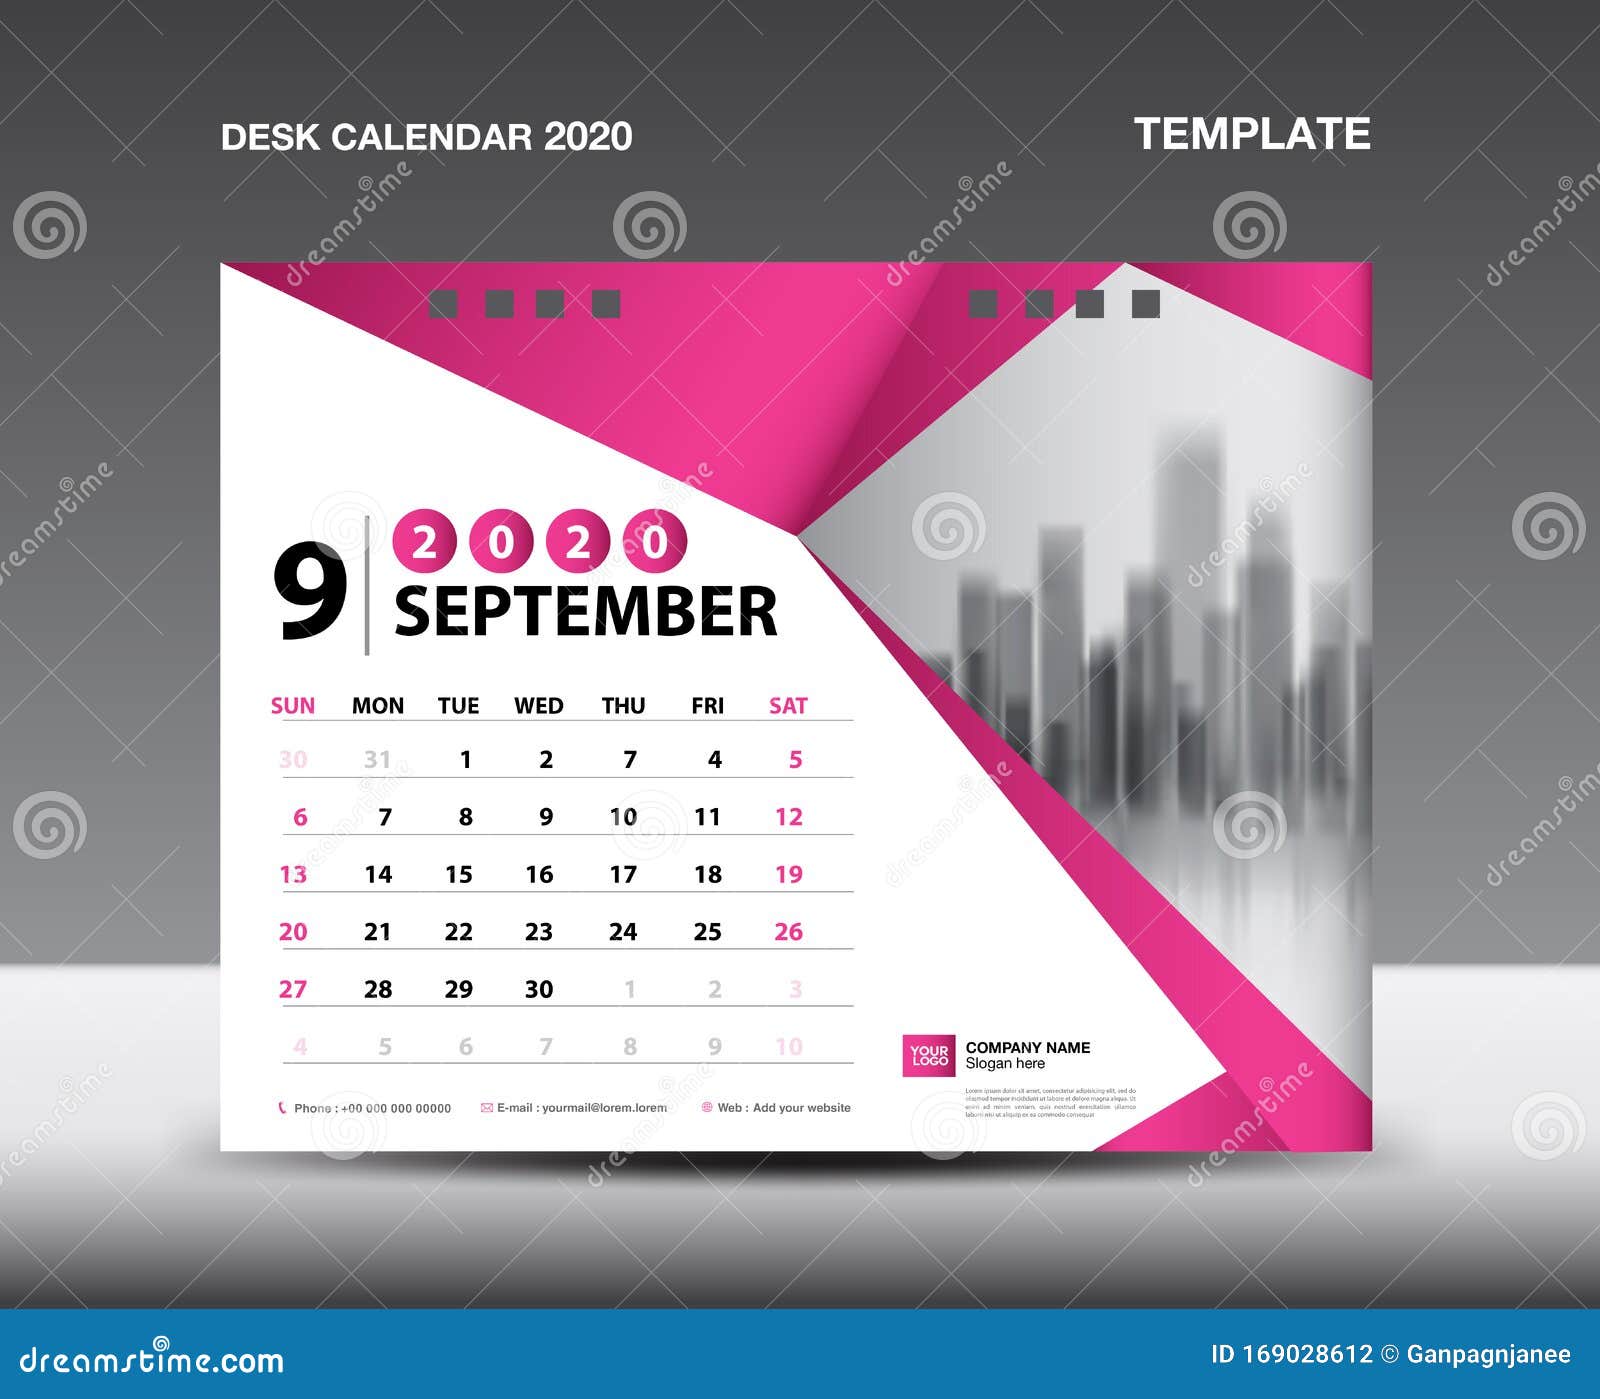 Desk Calendar 2020 Template Vector, SEPTEMBER 2020, Week